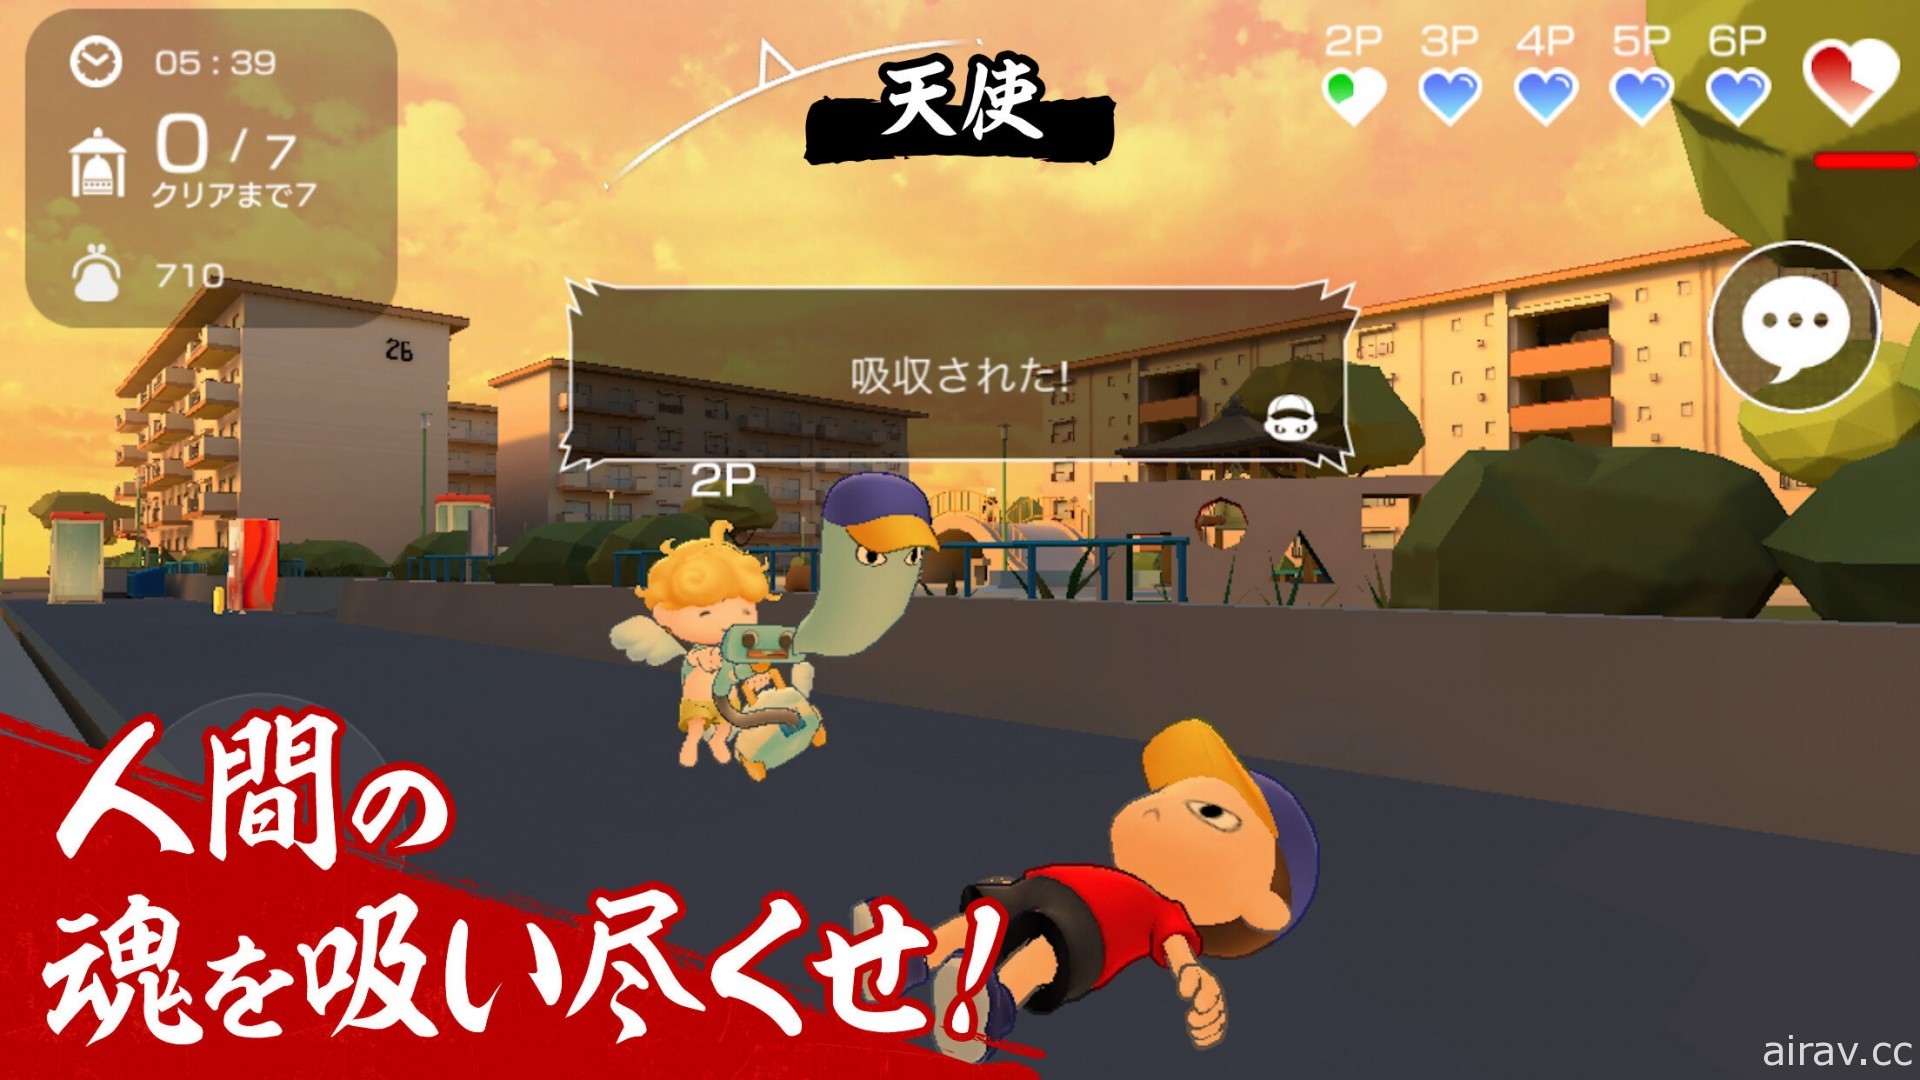 本田翼製作非對稱對戰遊戲《Nyorokko》今夏於日本推出 僅提供 6 個月的限定服務